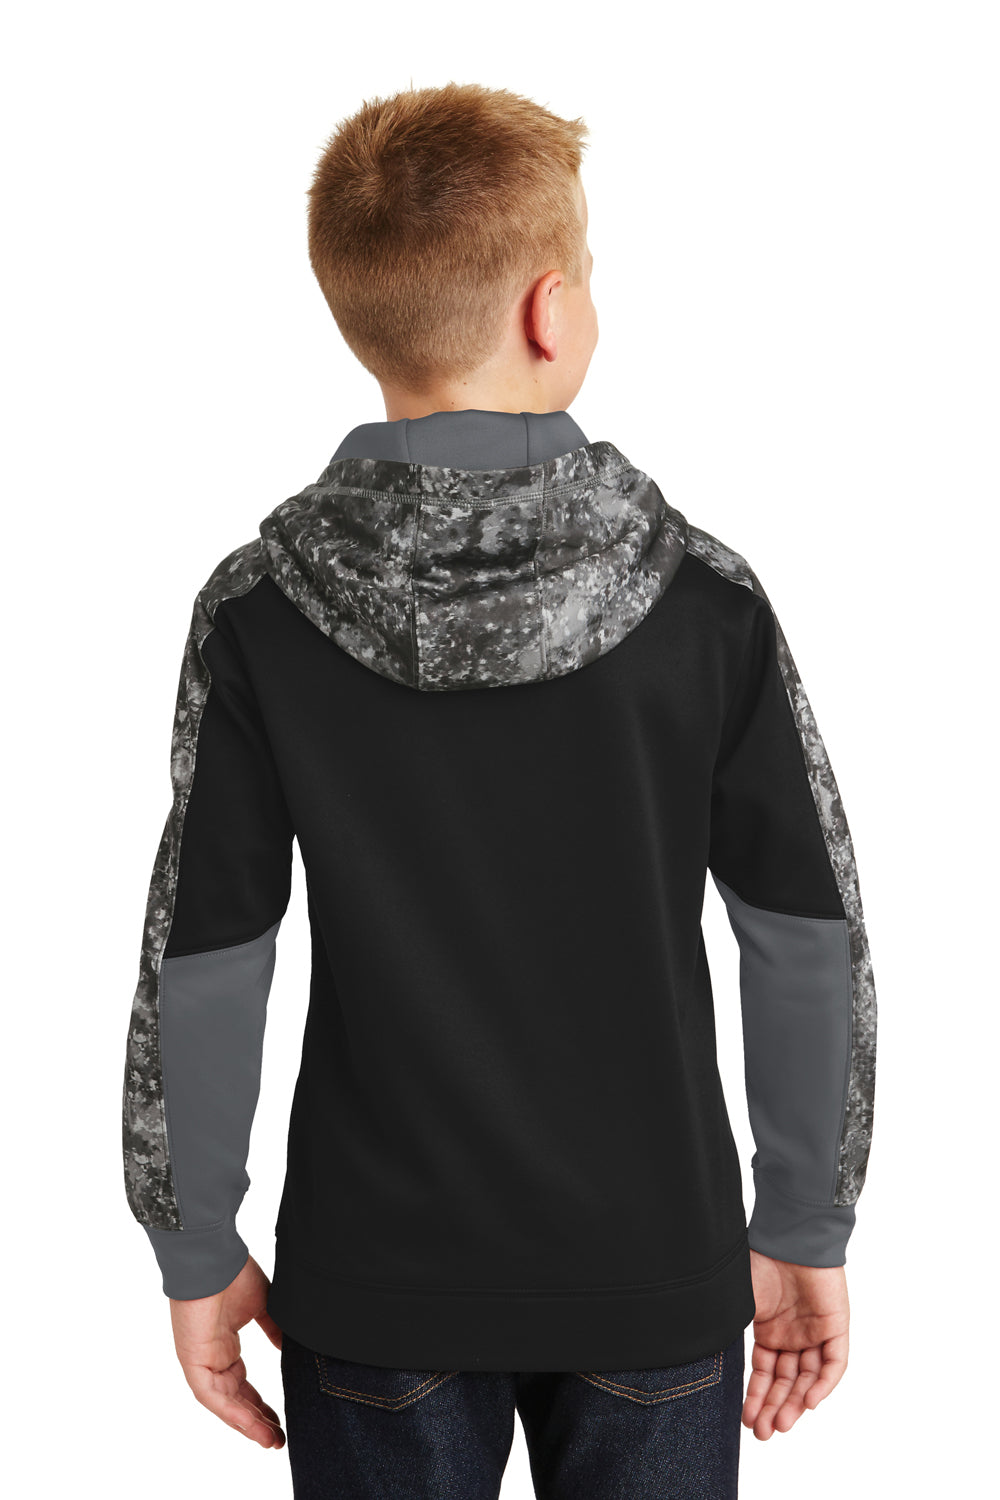 Sport-Tek YST231 Youth Sport-Wick Mineral Freeze Moisture Wicking Fleece Hooded Sweatshirt Hoodie Black/Grey Back